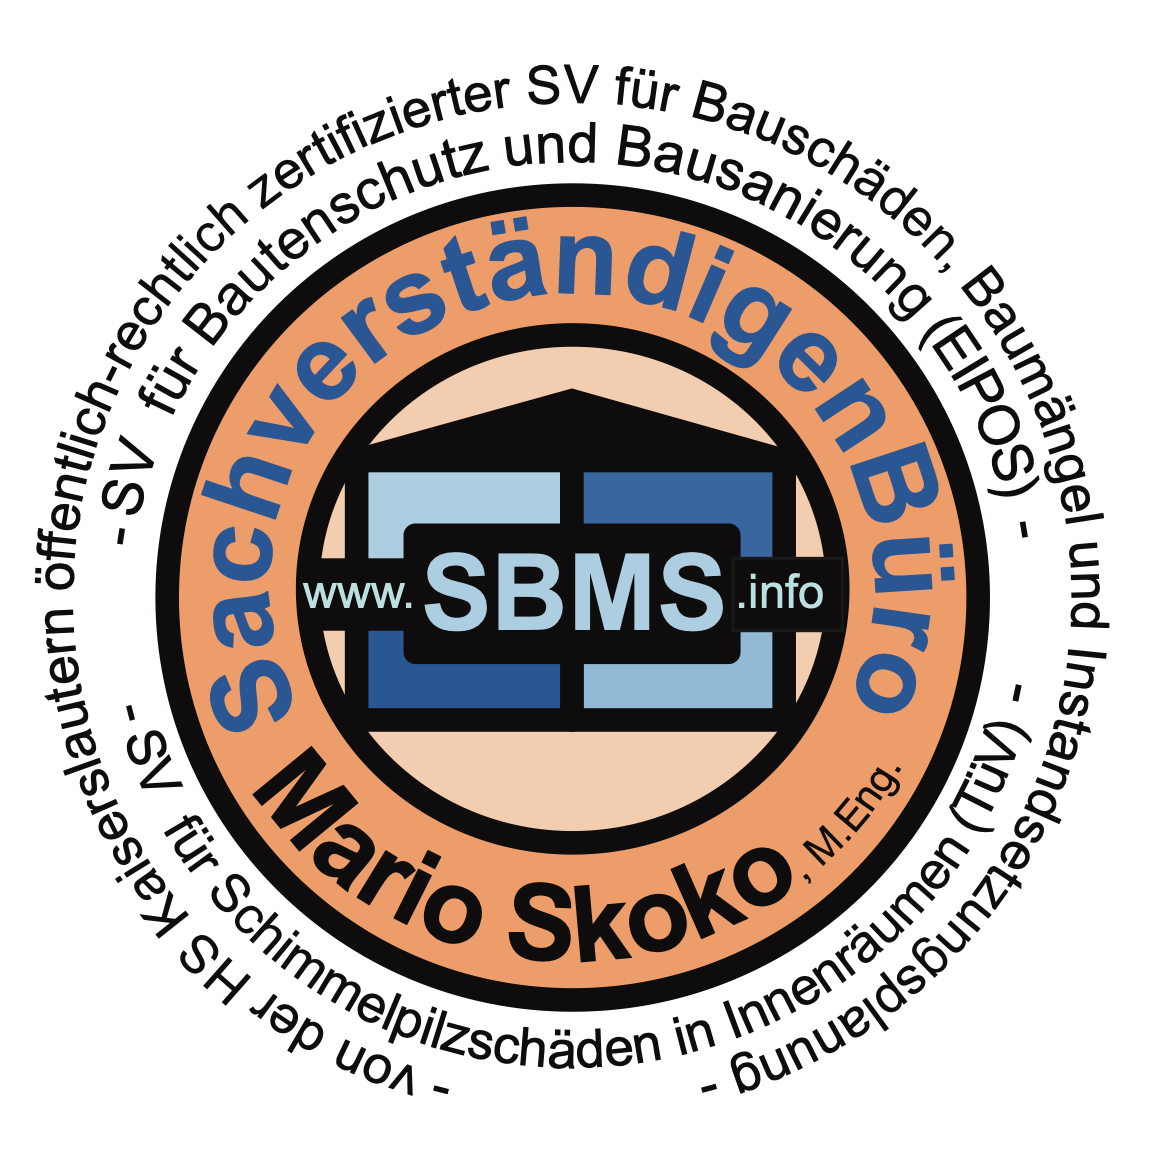 Logo von SachverständigenBüro Mario Skoko, M.Eng.